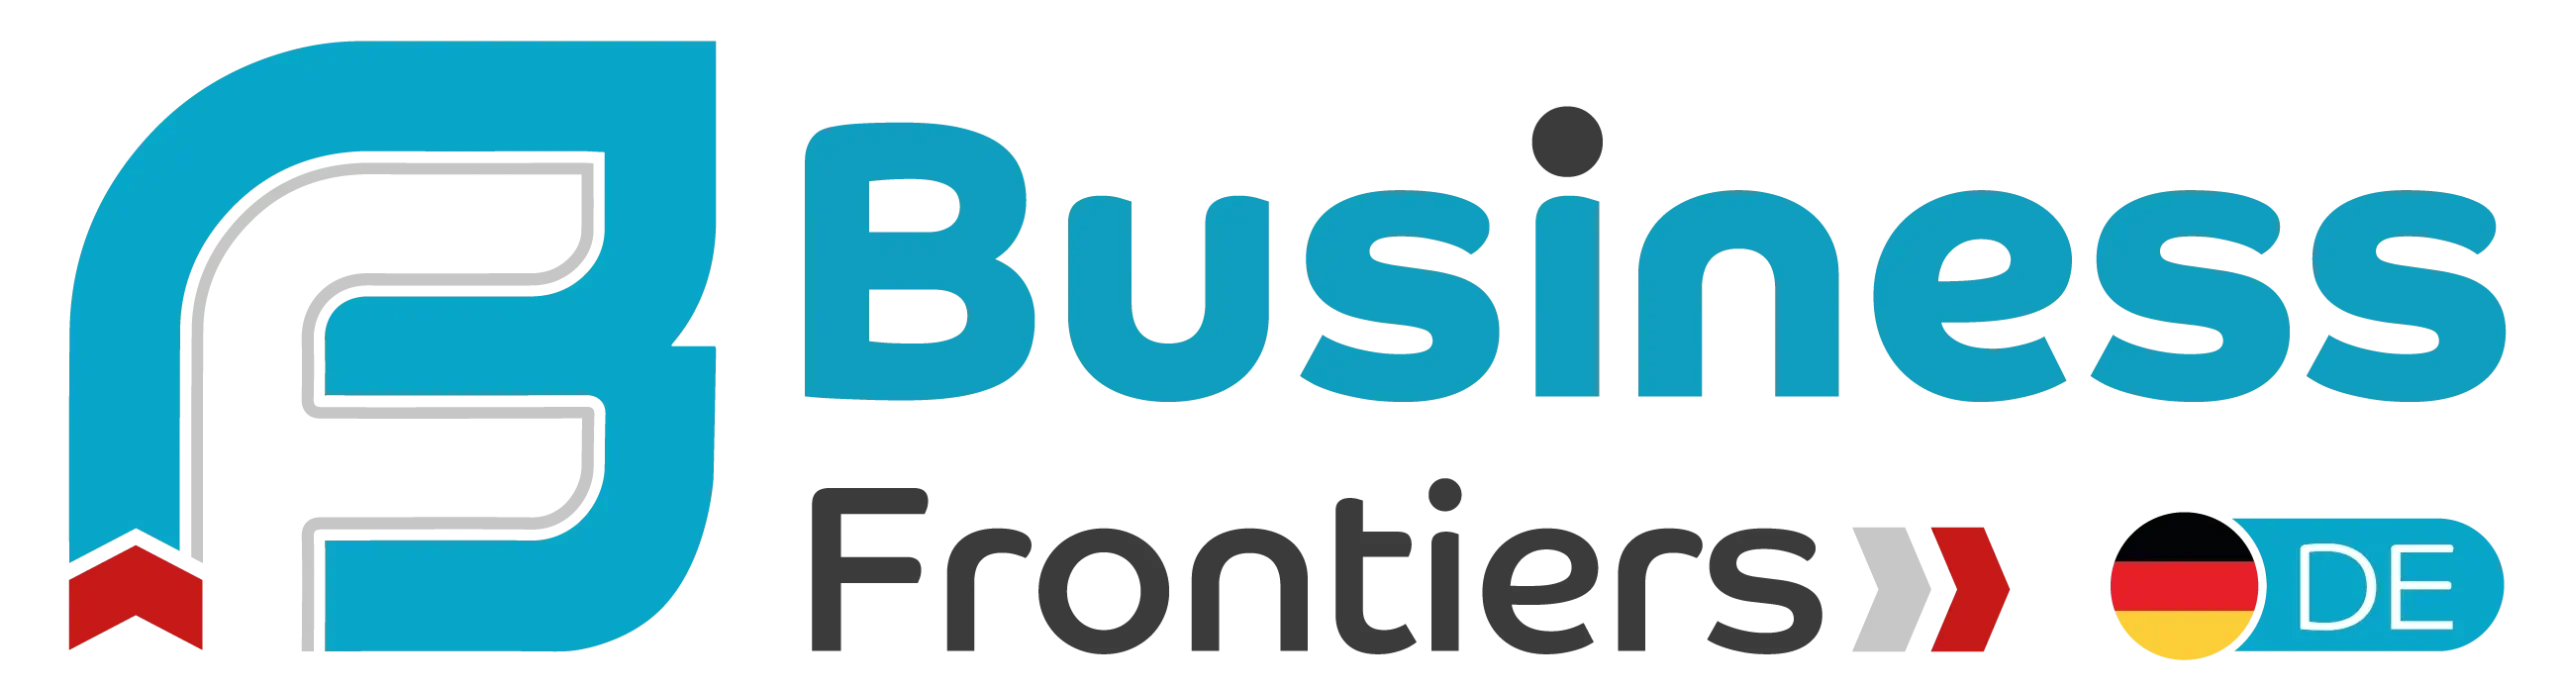 Business Frontiers_logo_DE